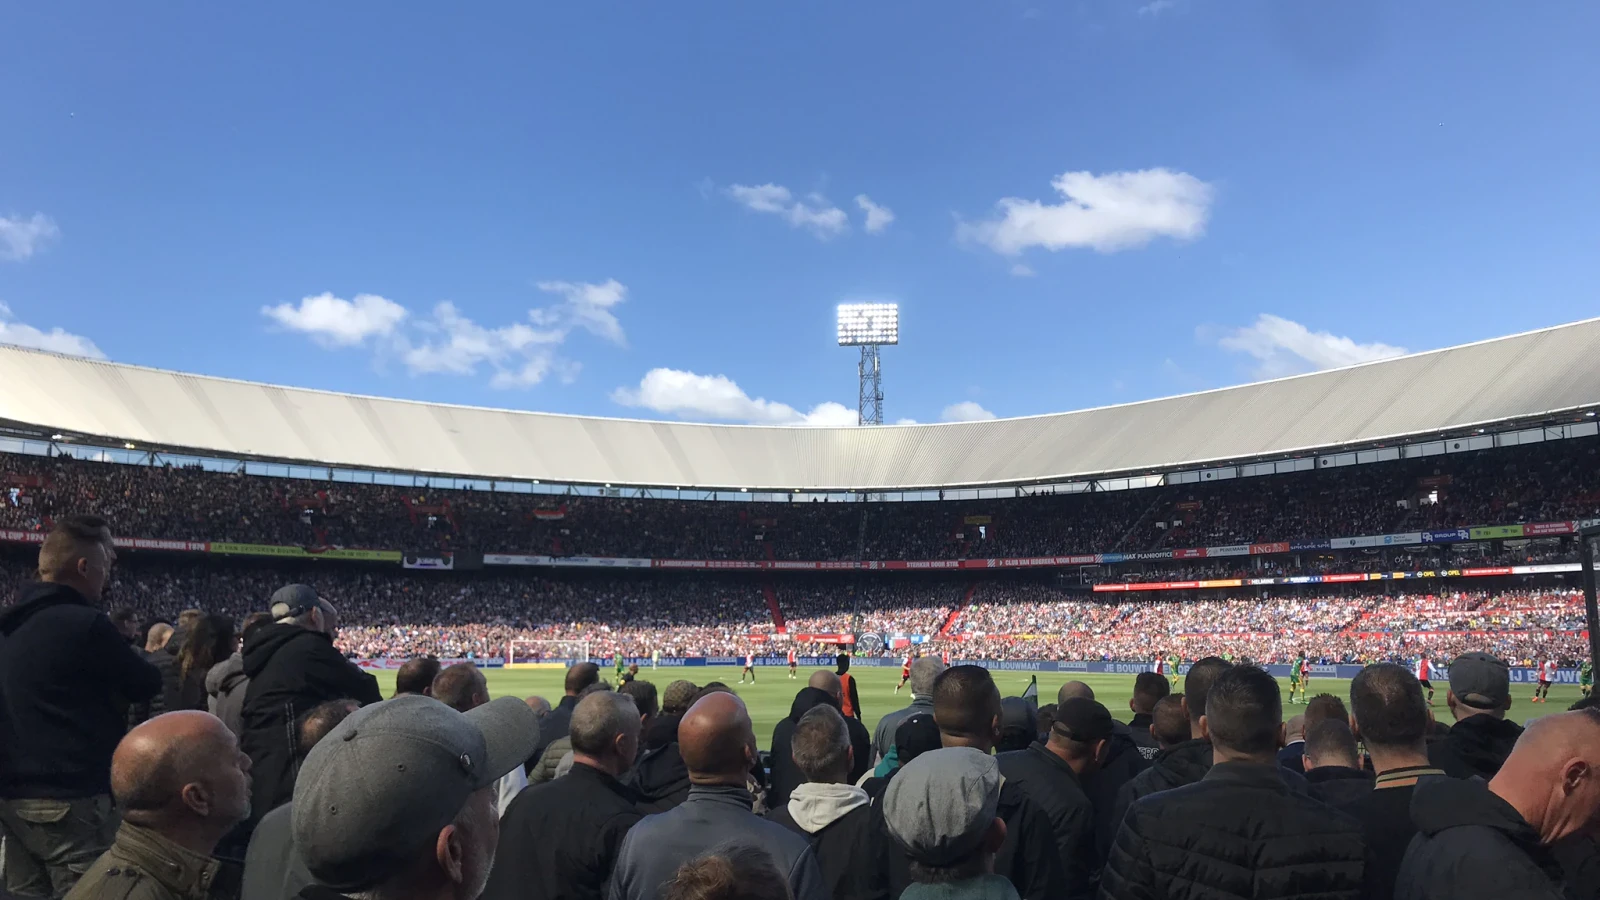 Feyenoord maakt voorprogramma bekend voor wedstrijd tegen SS Lazio